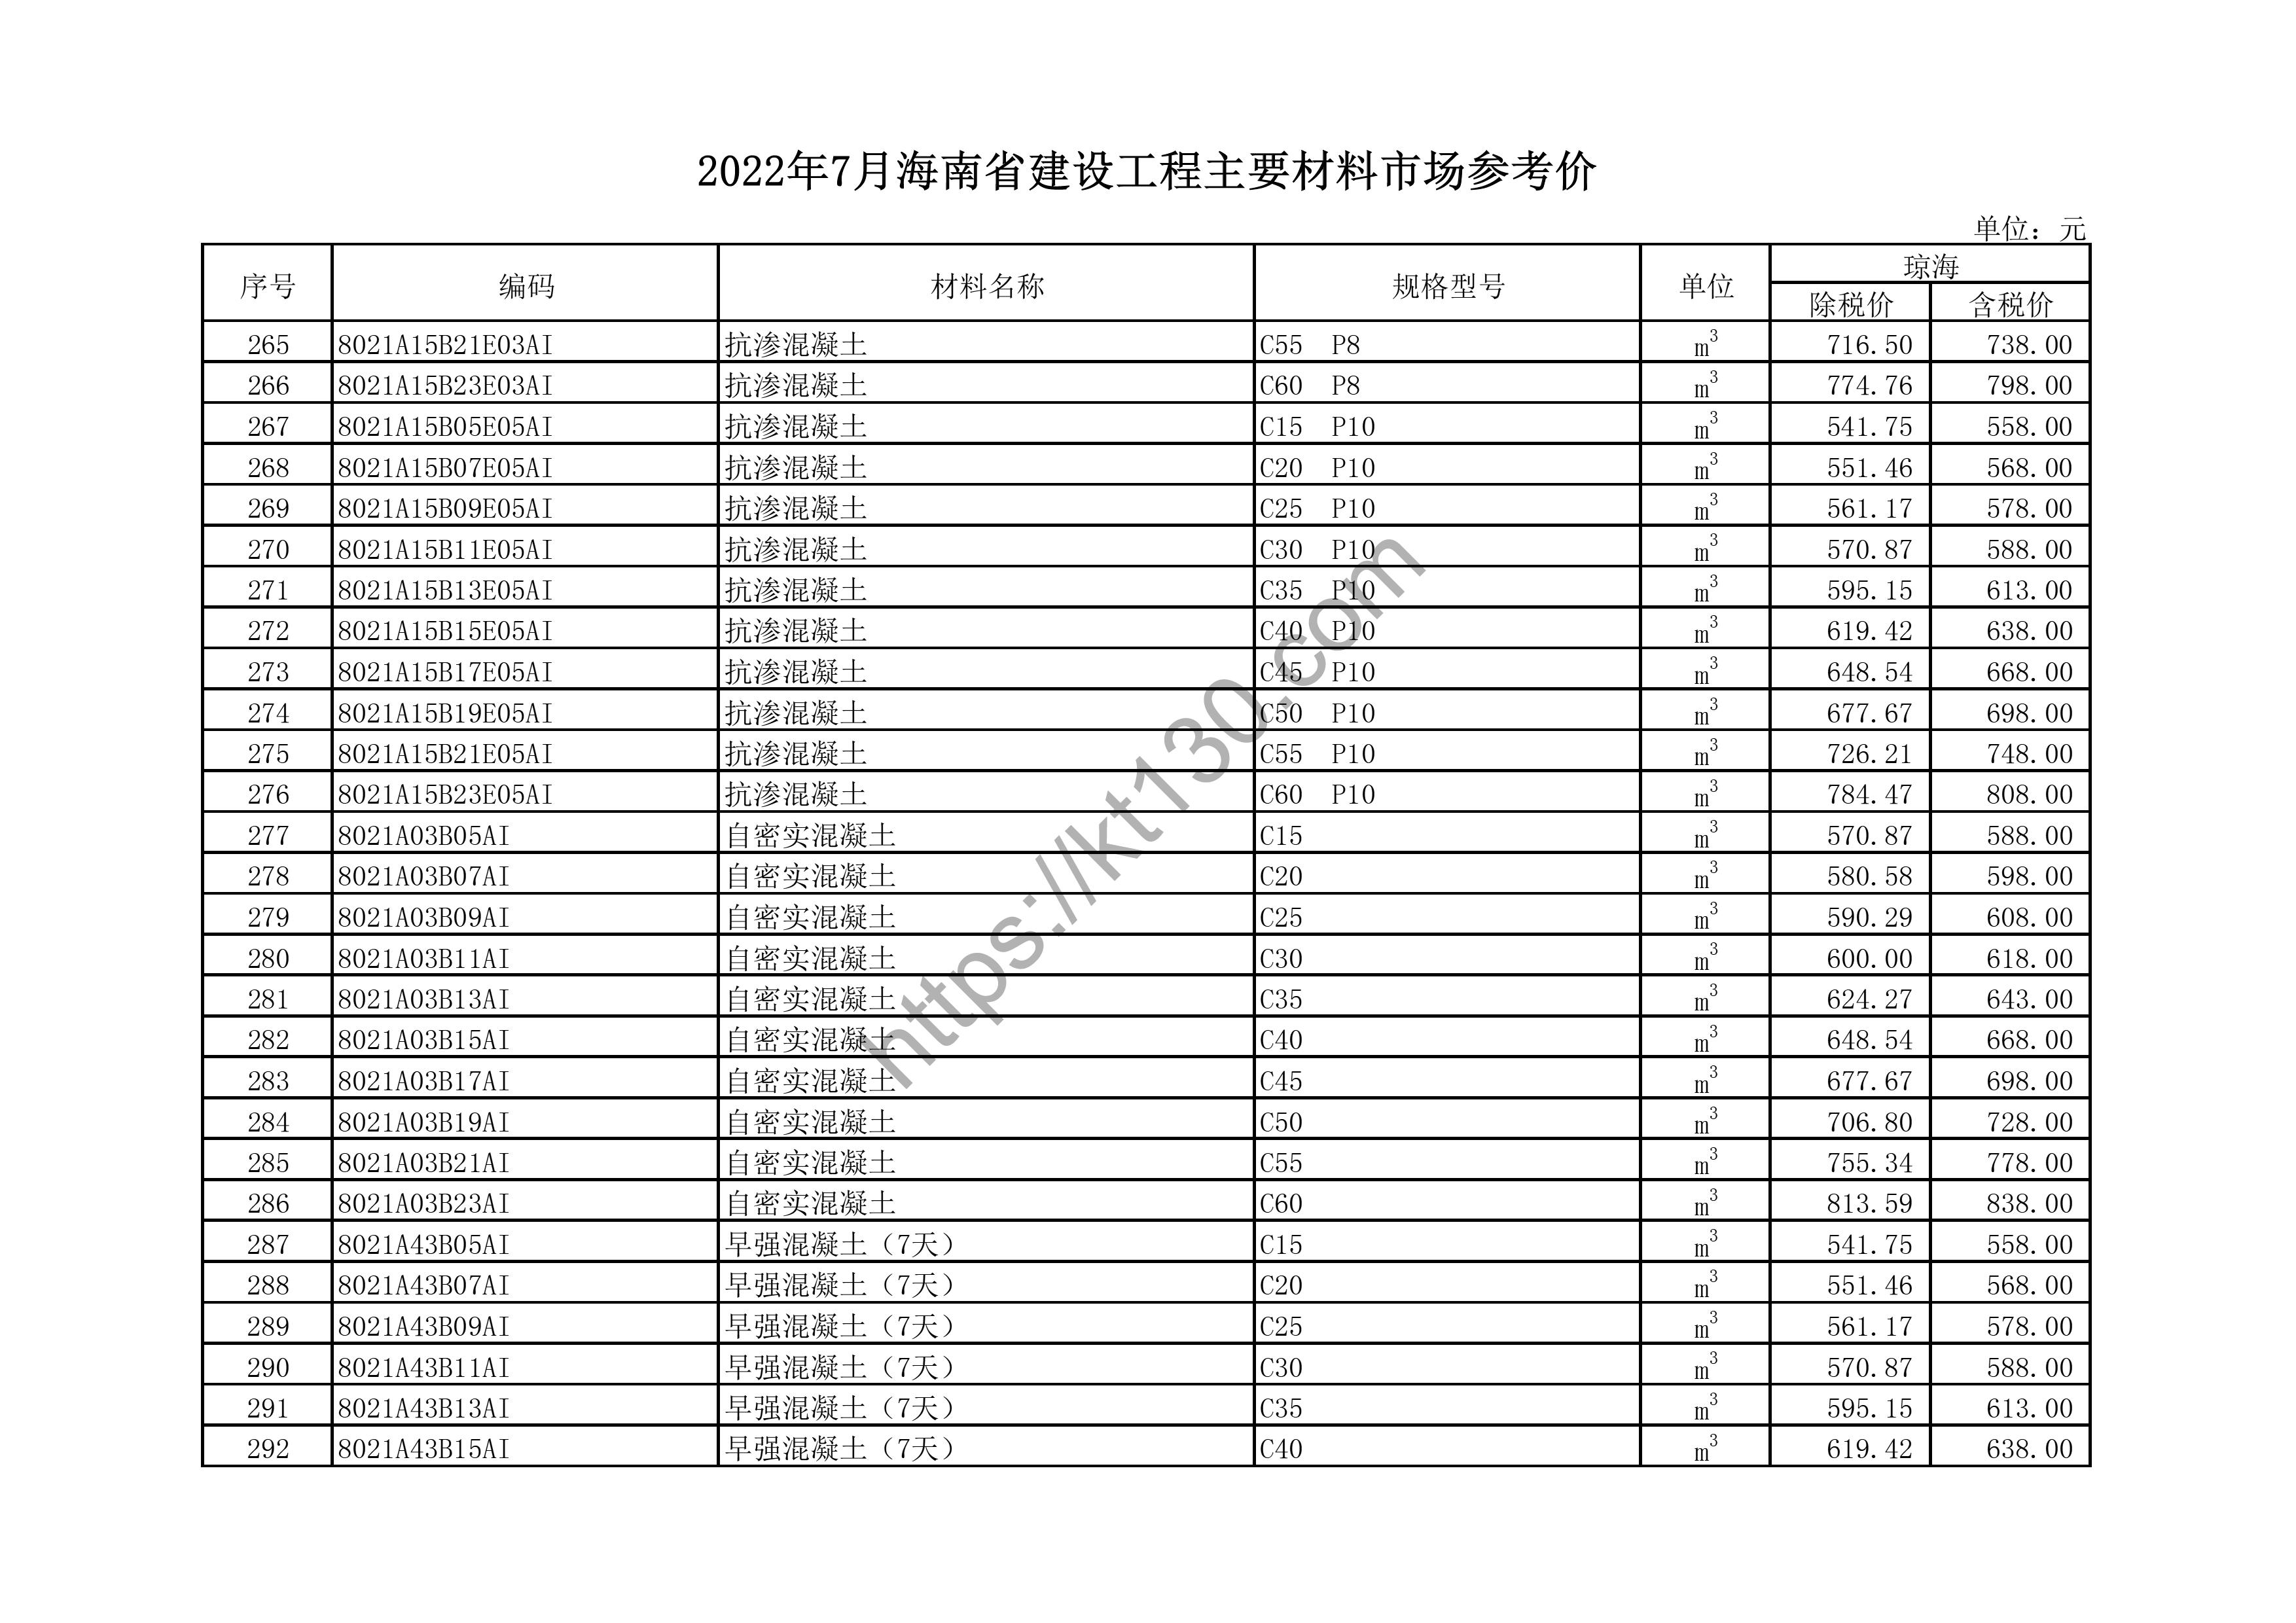 海南省2022年7月建筑材料价_冷水管_44801